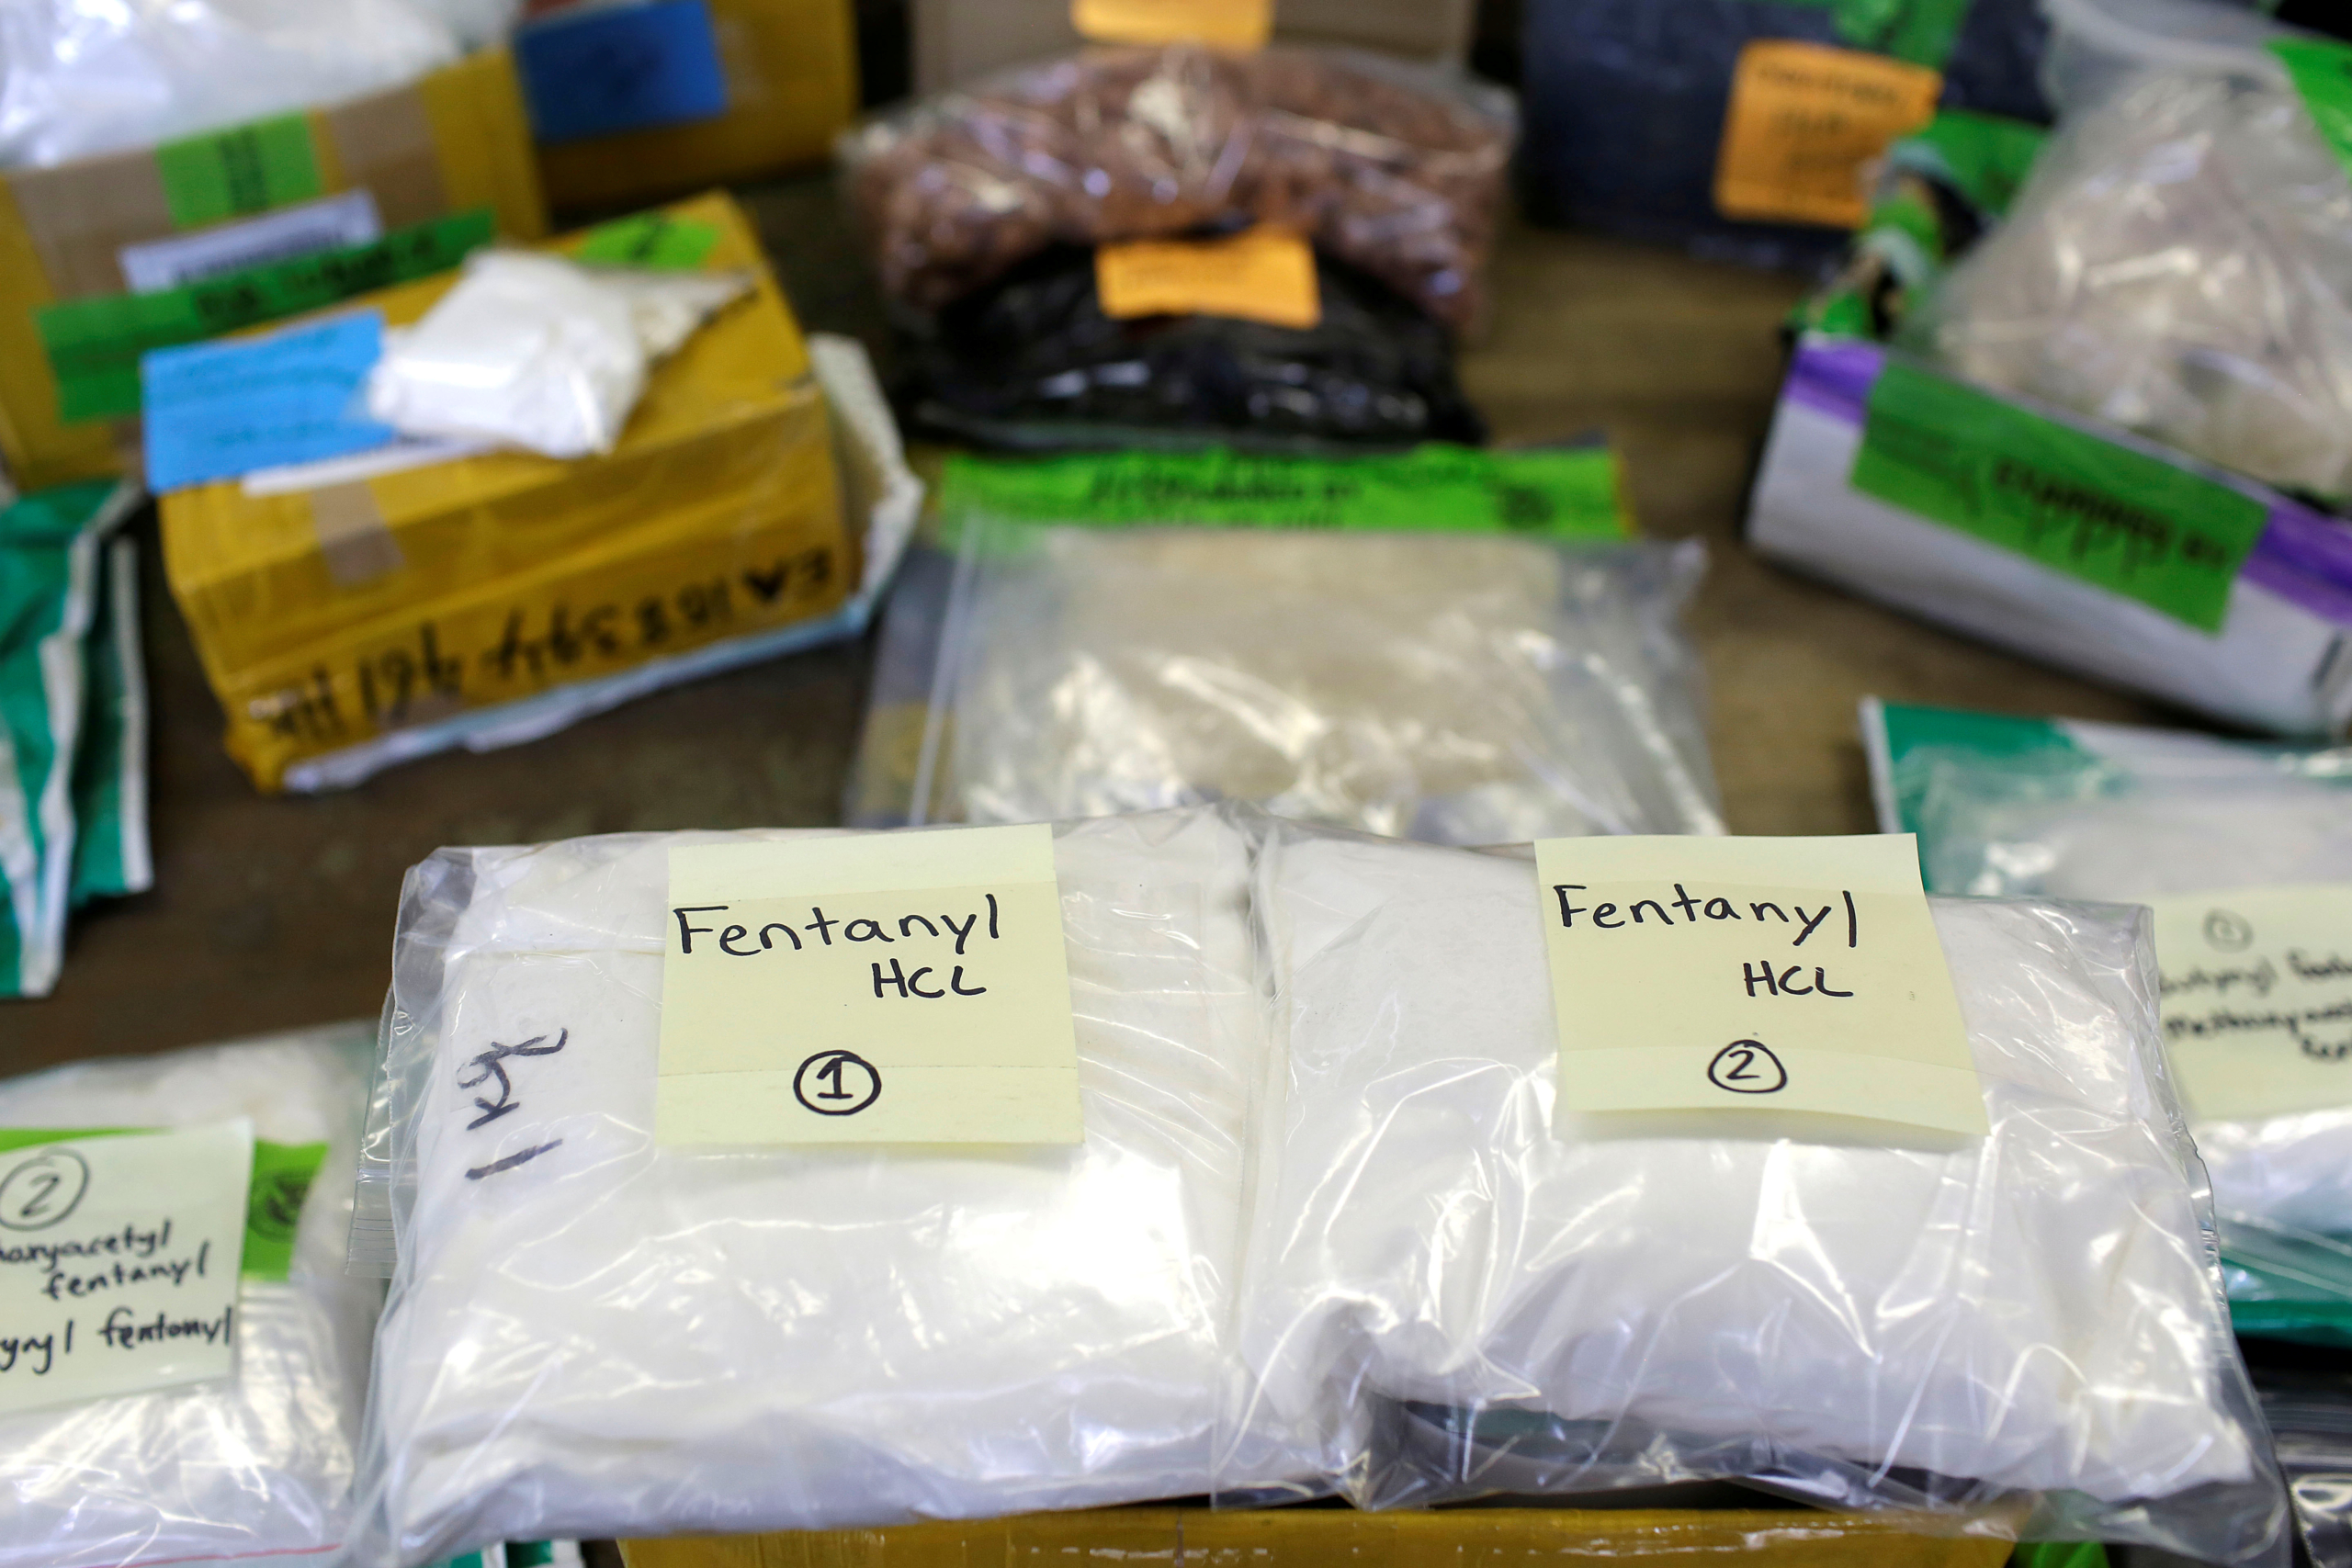 Các túi nhựa chứa Fentanyl được trưng bày trên bàn tại khu vực của Cục Hải quan và Biên phòng Hoa Kỳ ở trung tâm phân loại thư và bưu kiện quốc tế International Mail Facility tại Phi trường Quốc tế O’Hare ở Chicago, Illinois, vào ngày 29/11/2017. (Ảnh: Joshua Lott/Reuters)